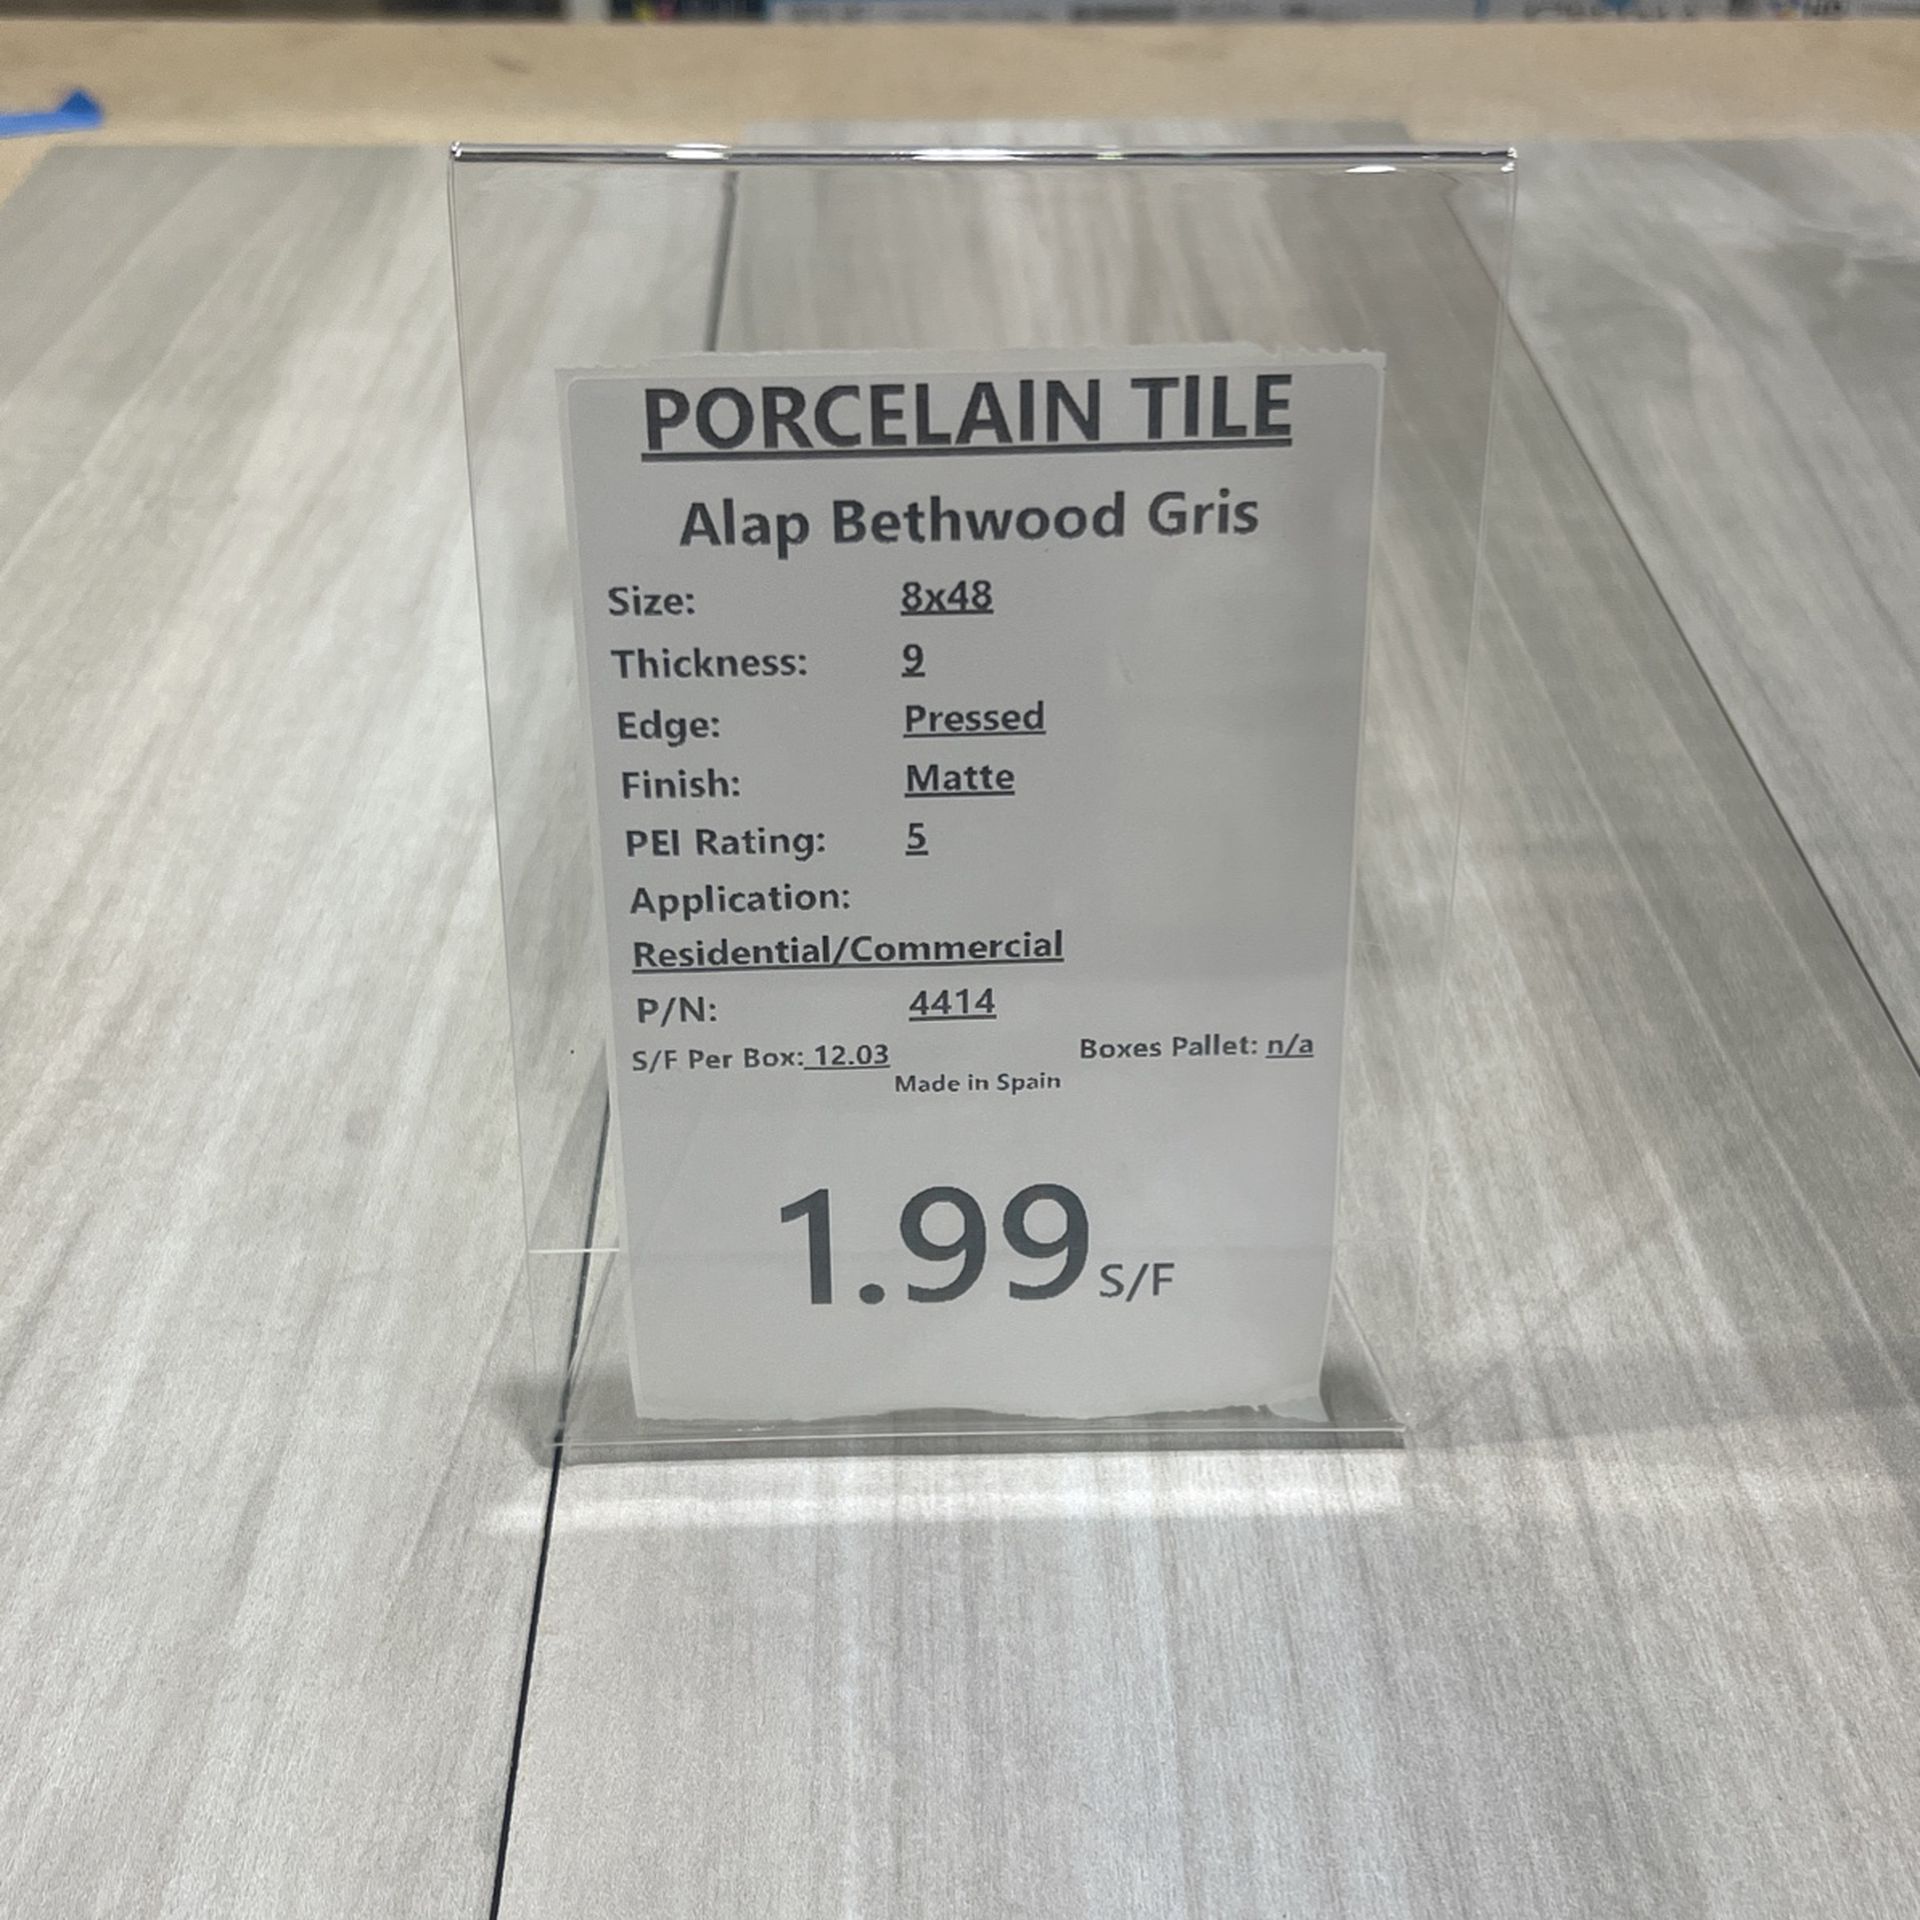 PORCELAIN TILE 8”X 48”  $1.99/ Sq ft